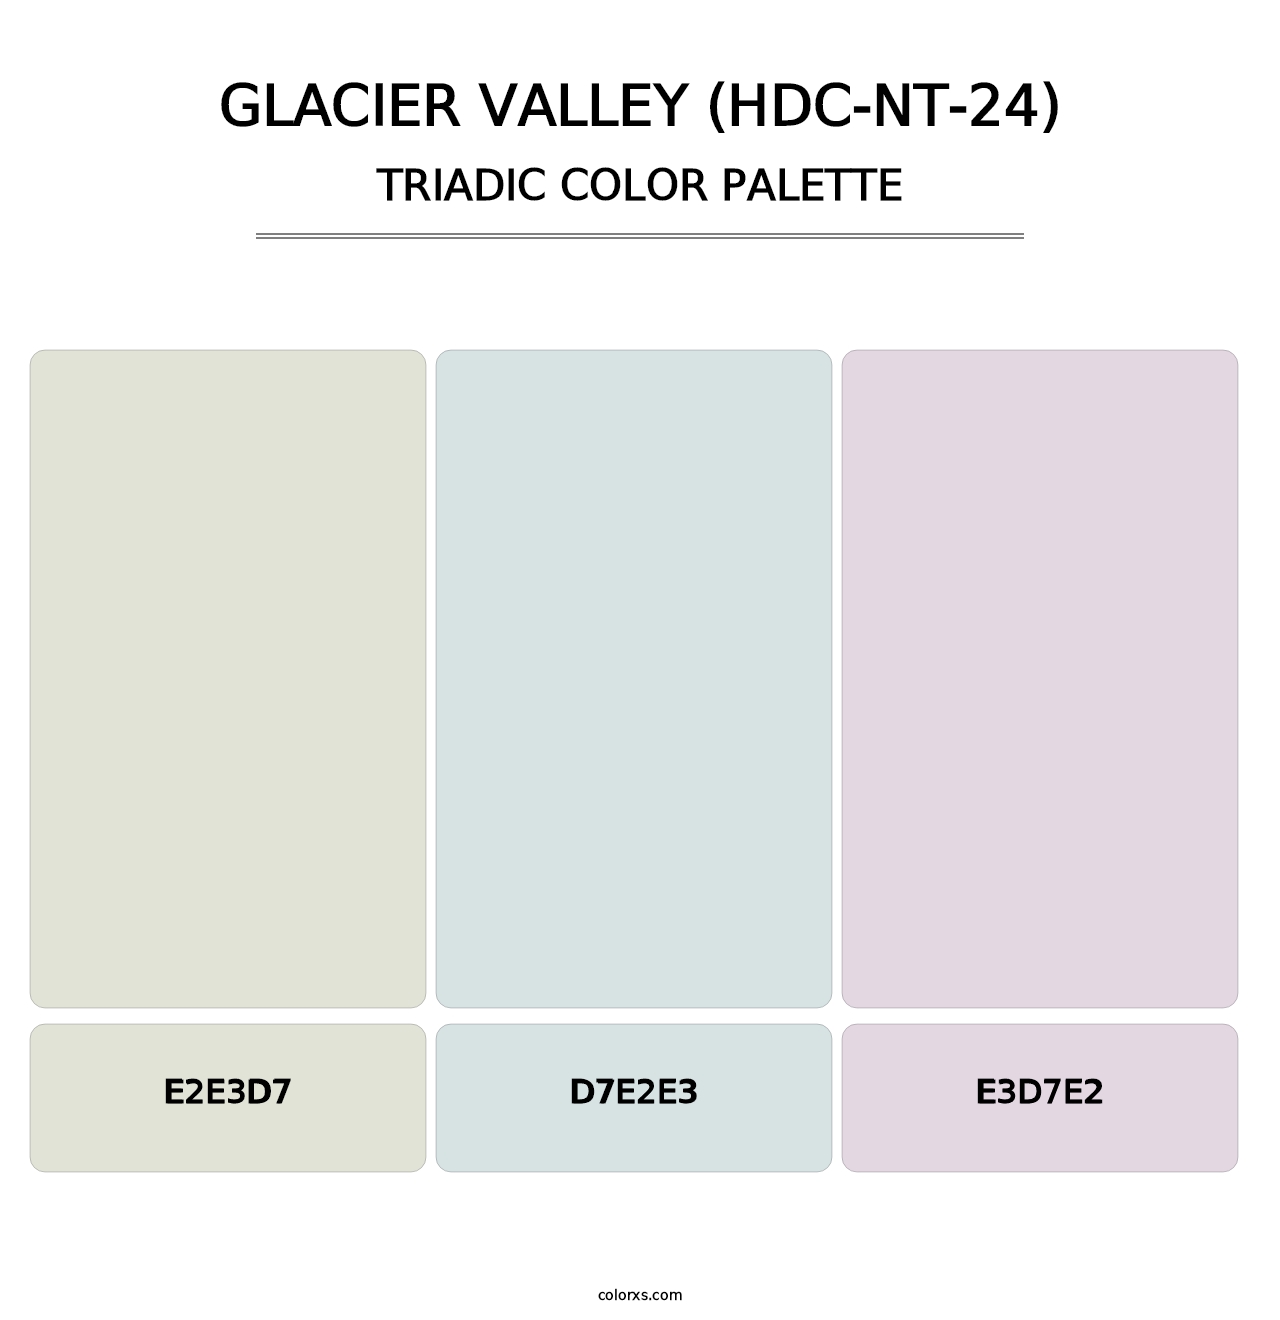 Glacier Valley (HDC-NT-24) - Triadic Color Palette